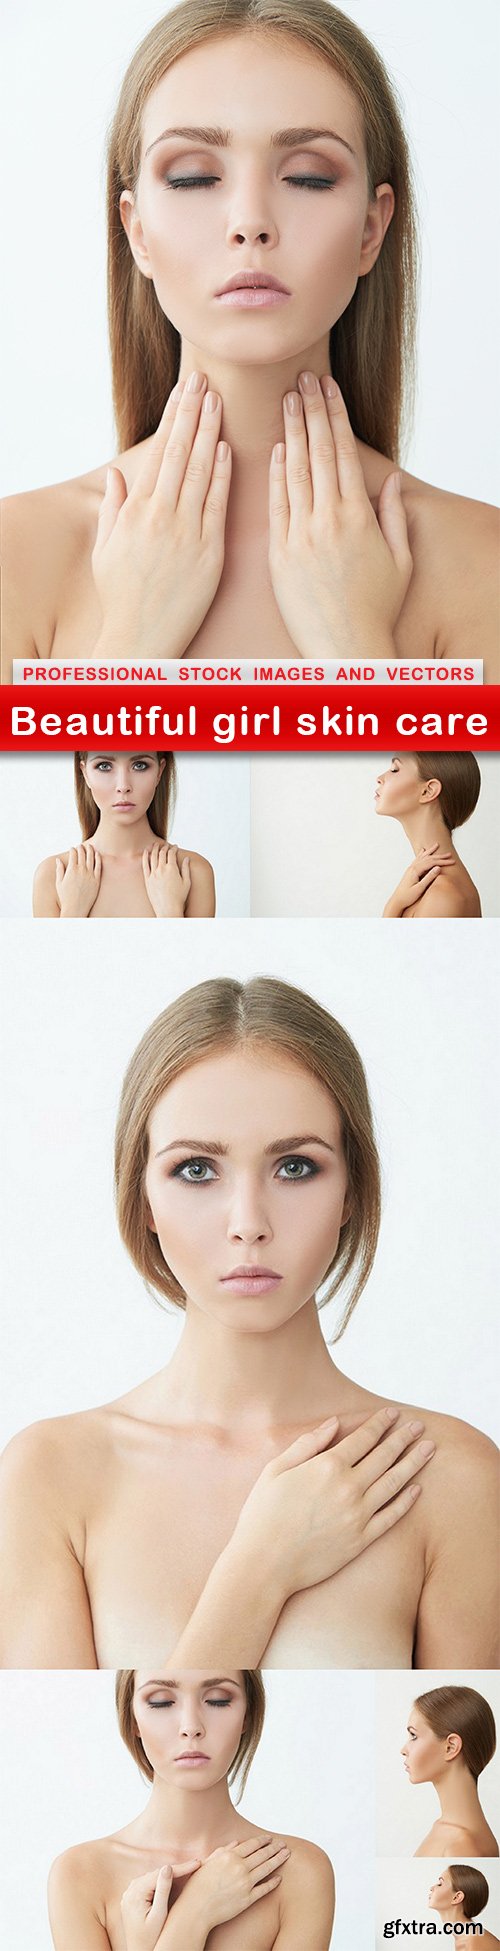 Beautiful girl skin care - 7 UHQ JPEG